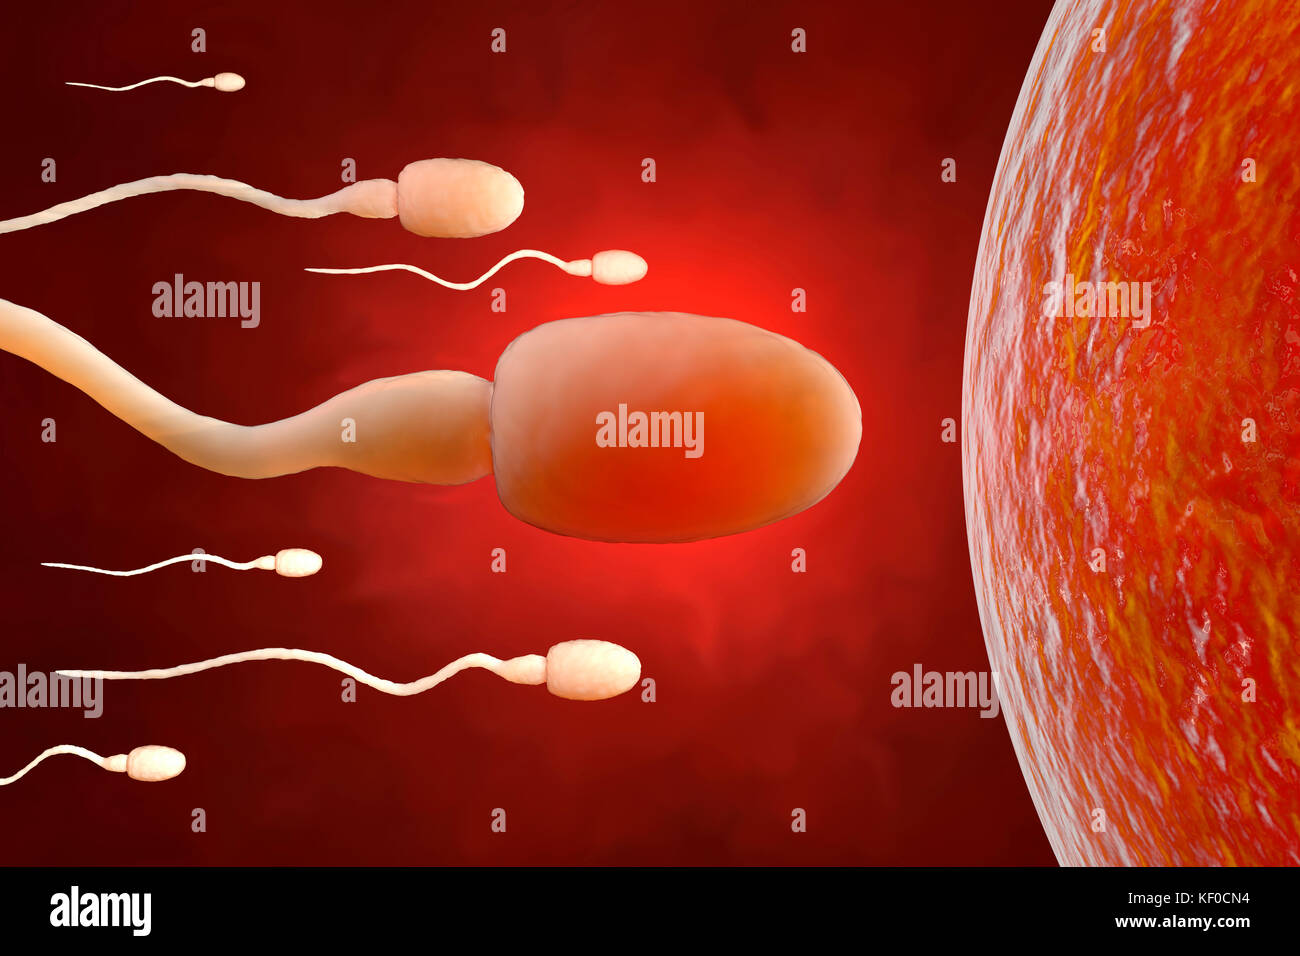 Le sperme en essayant d'atteindre un ovule, 3D Rendering Banque D'Images